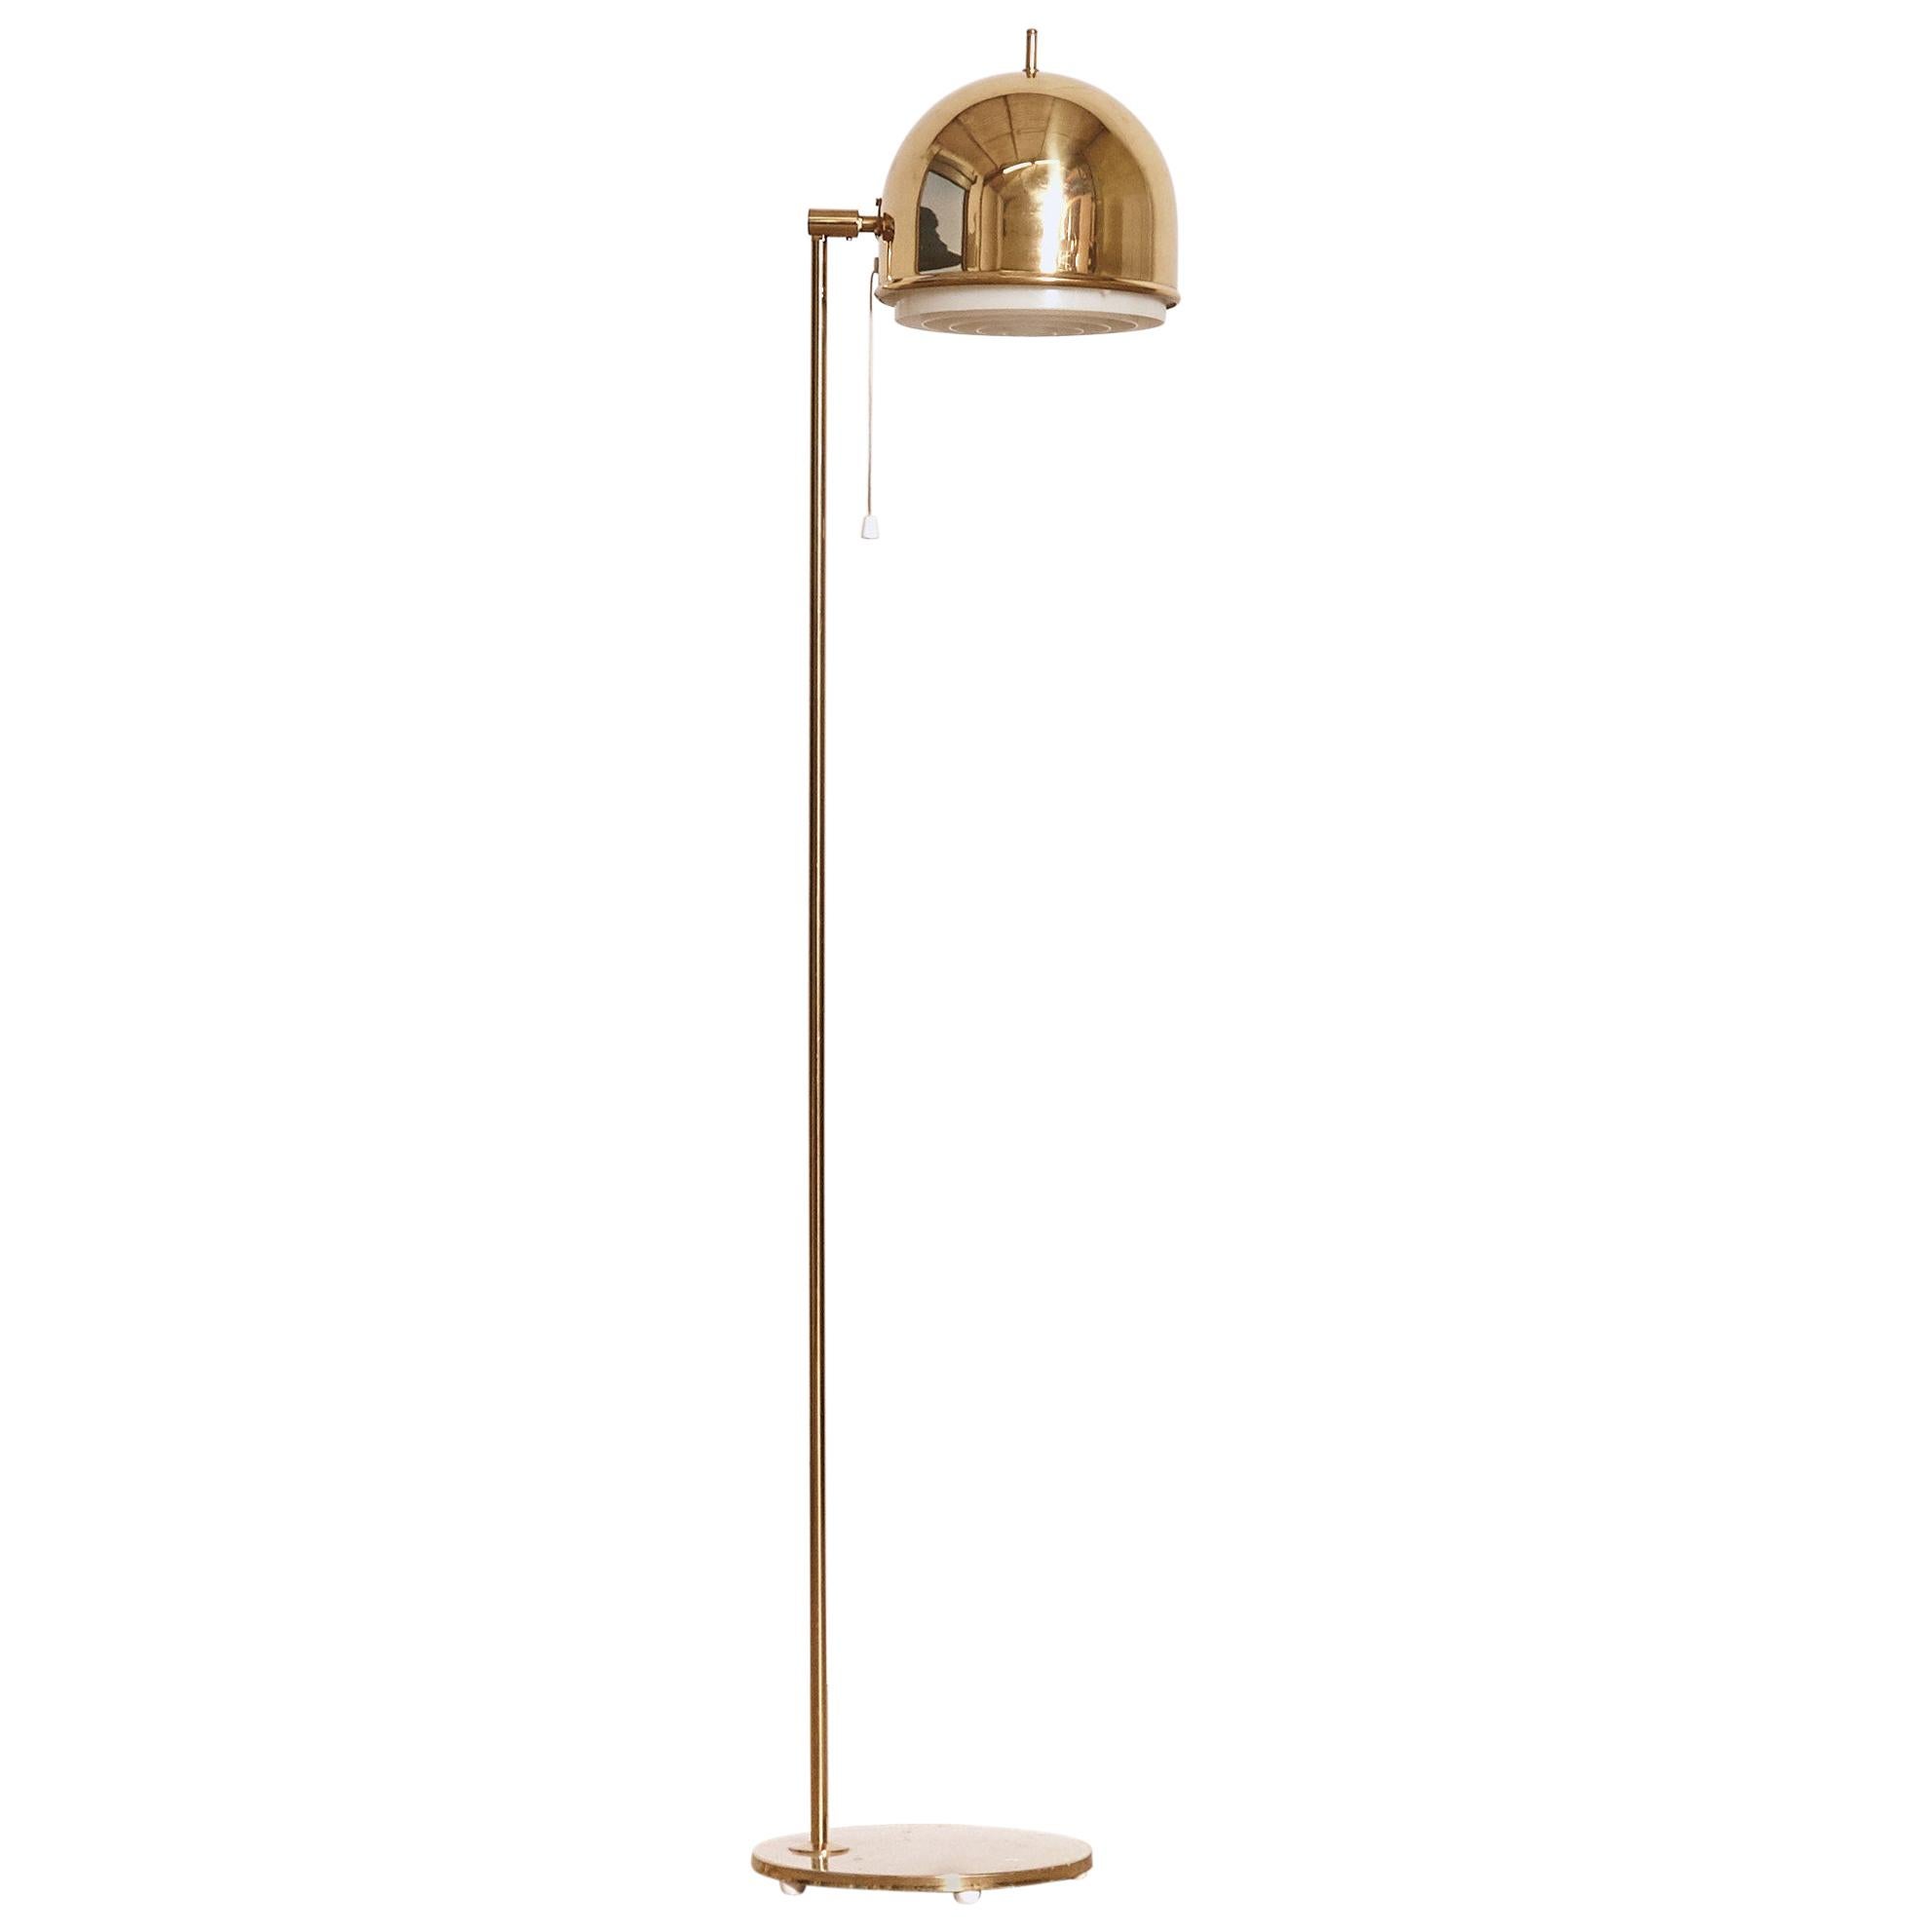 Bergboms Model G-075 Brass Floor Lamp, Sweden, 1960s